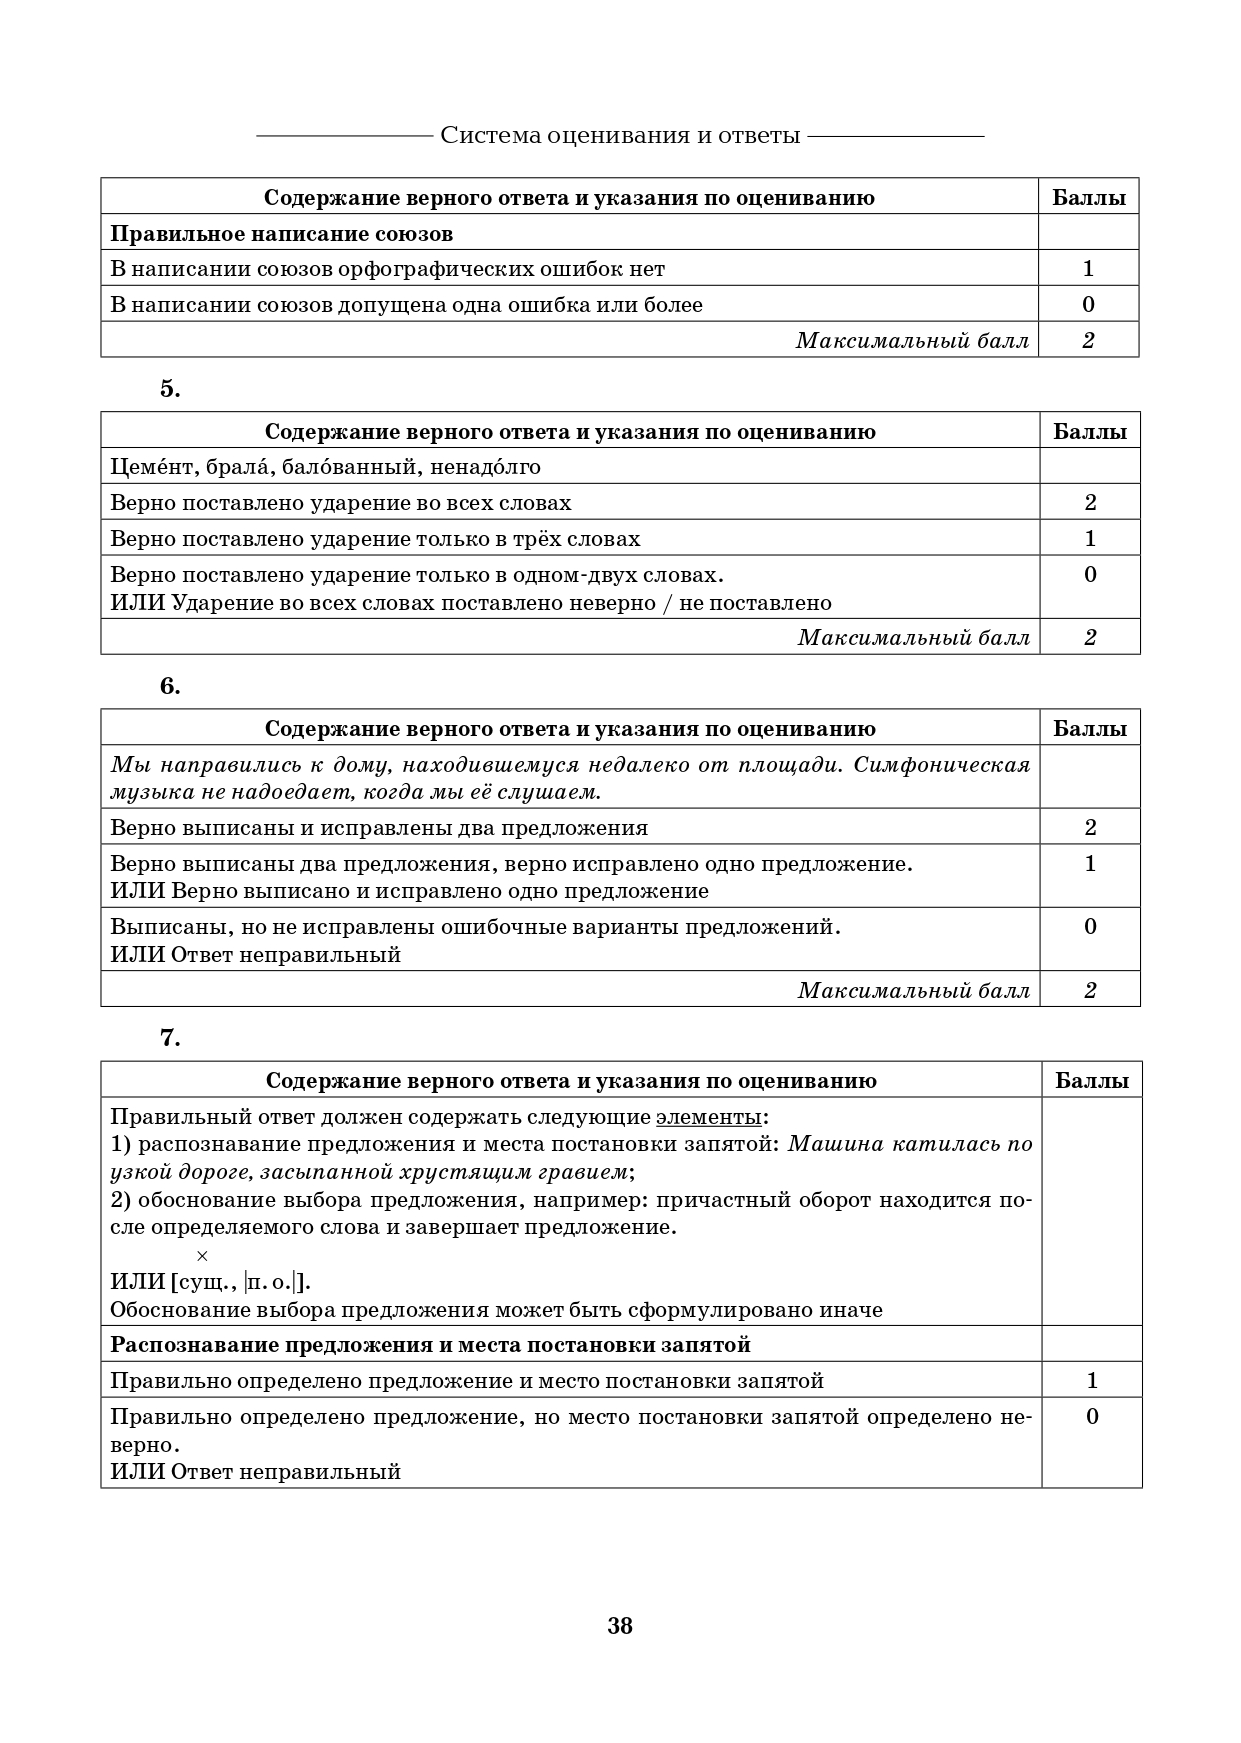 Русский язык. 7 класс. ВПР. 10 тренировочных вариантов. 7-е изд.